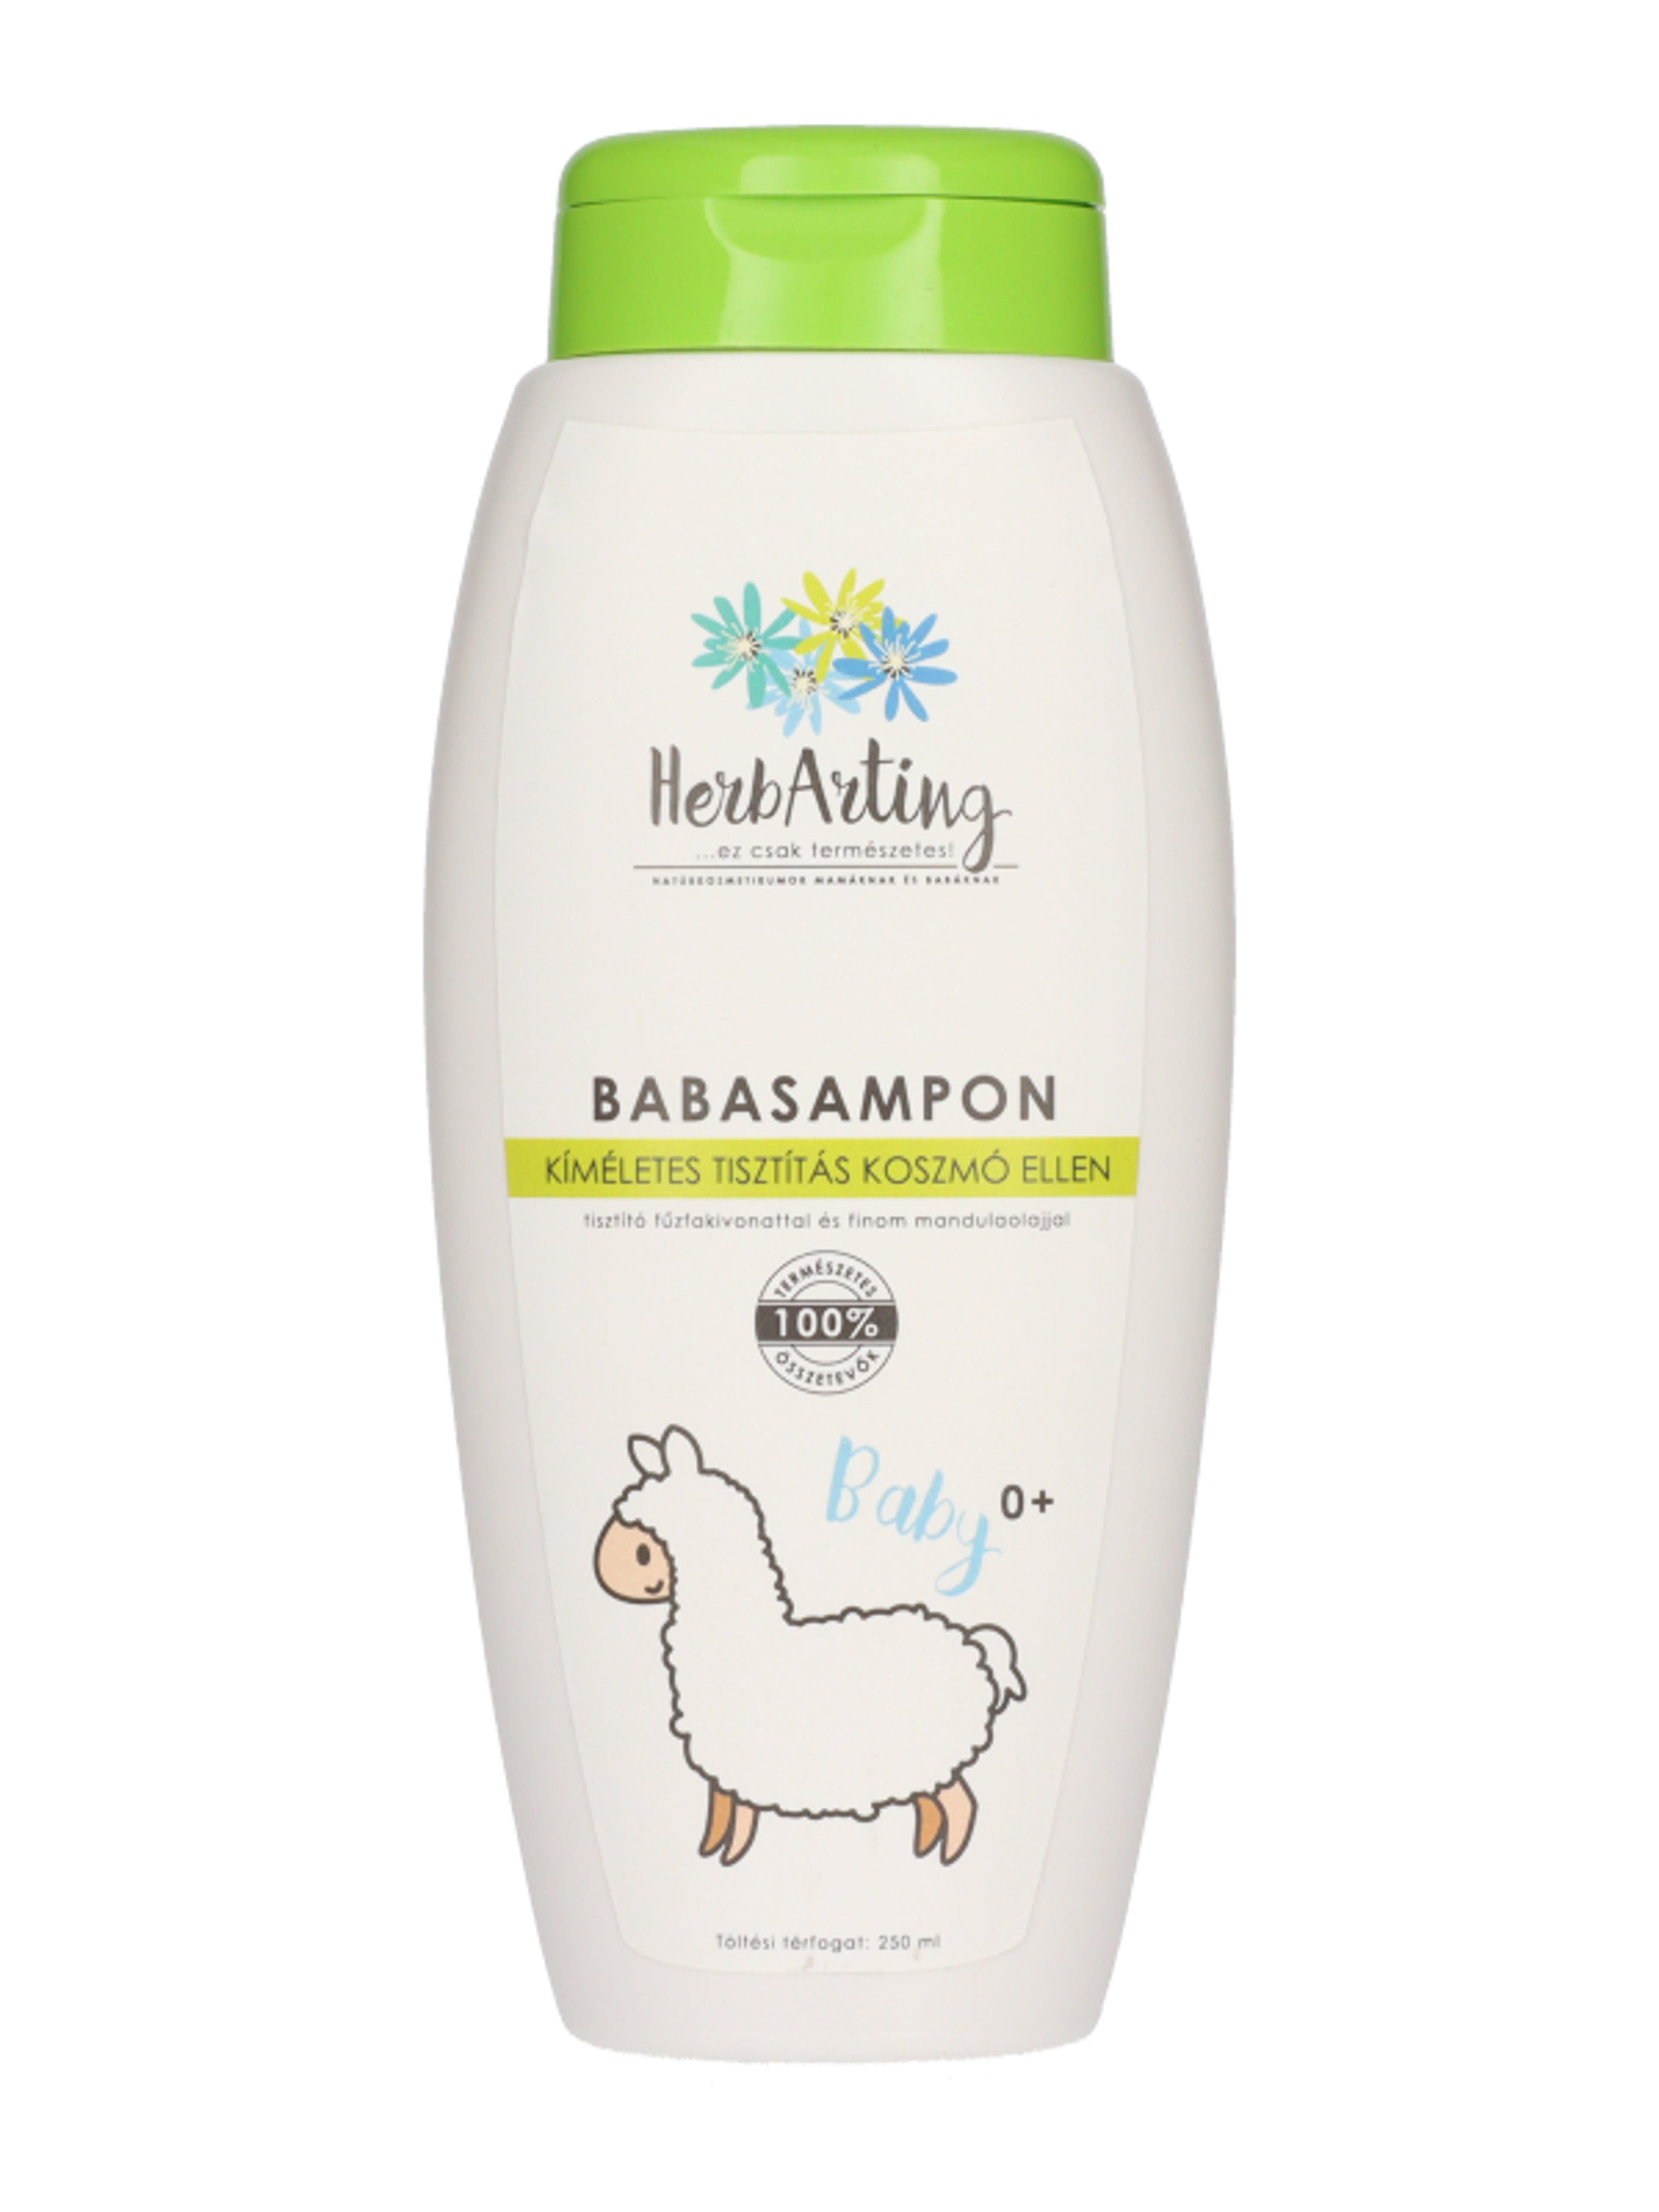 HerbArting Naturkozmetikum babasampon - 250 ml-2